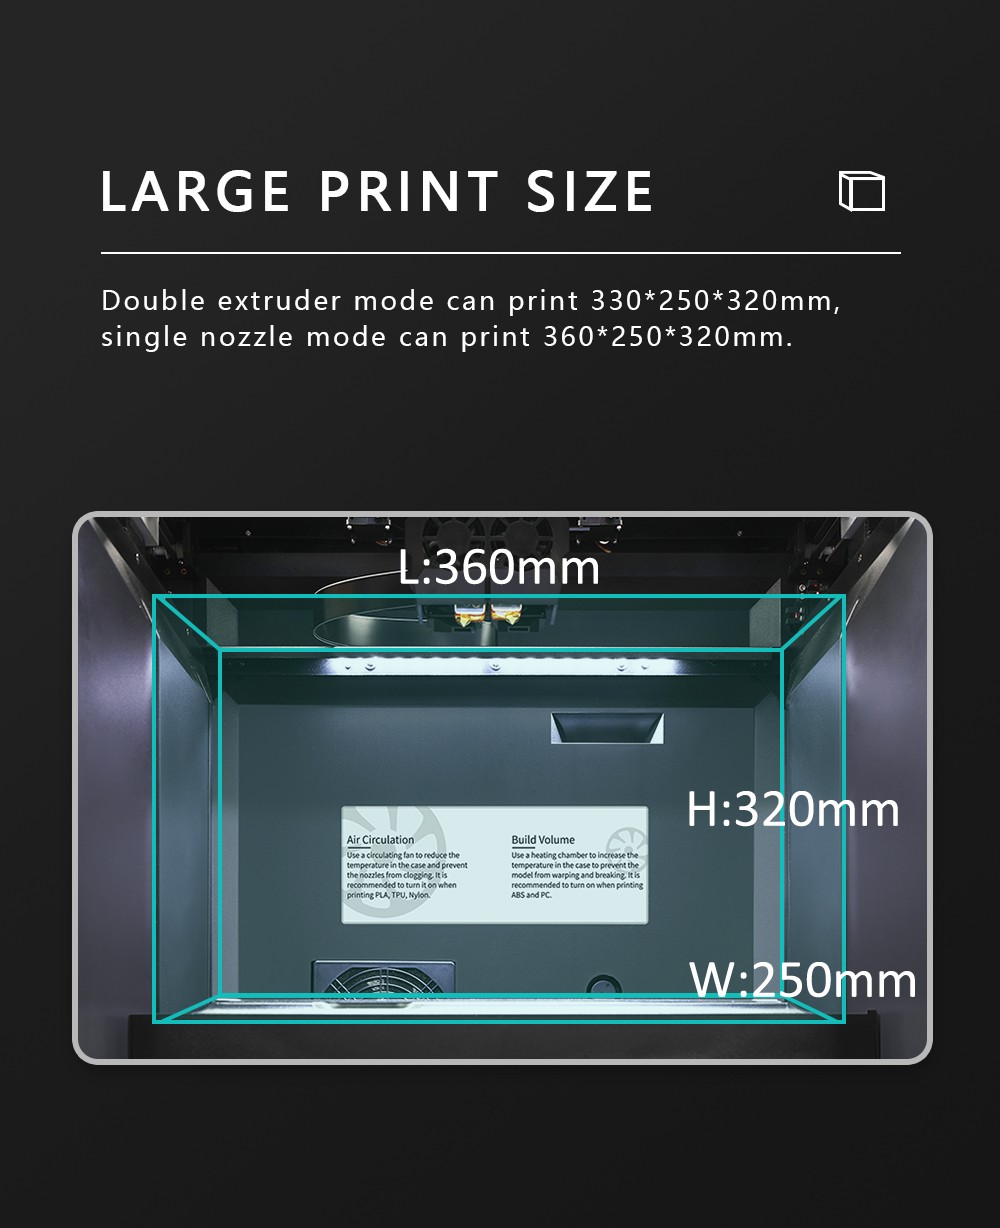 TECNOLOGIA QIDI i Stampante 3D veloce Doppio estrusore Stampa rapida Dimensioni di stampa 360x250x320mm